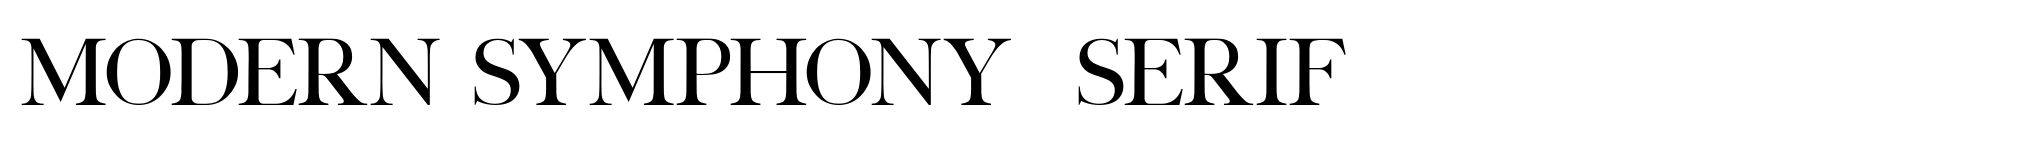 Modern Symphony  Serif image